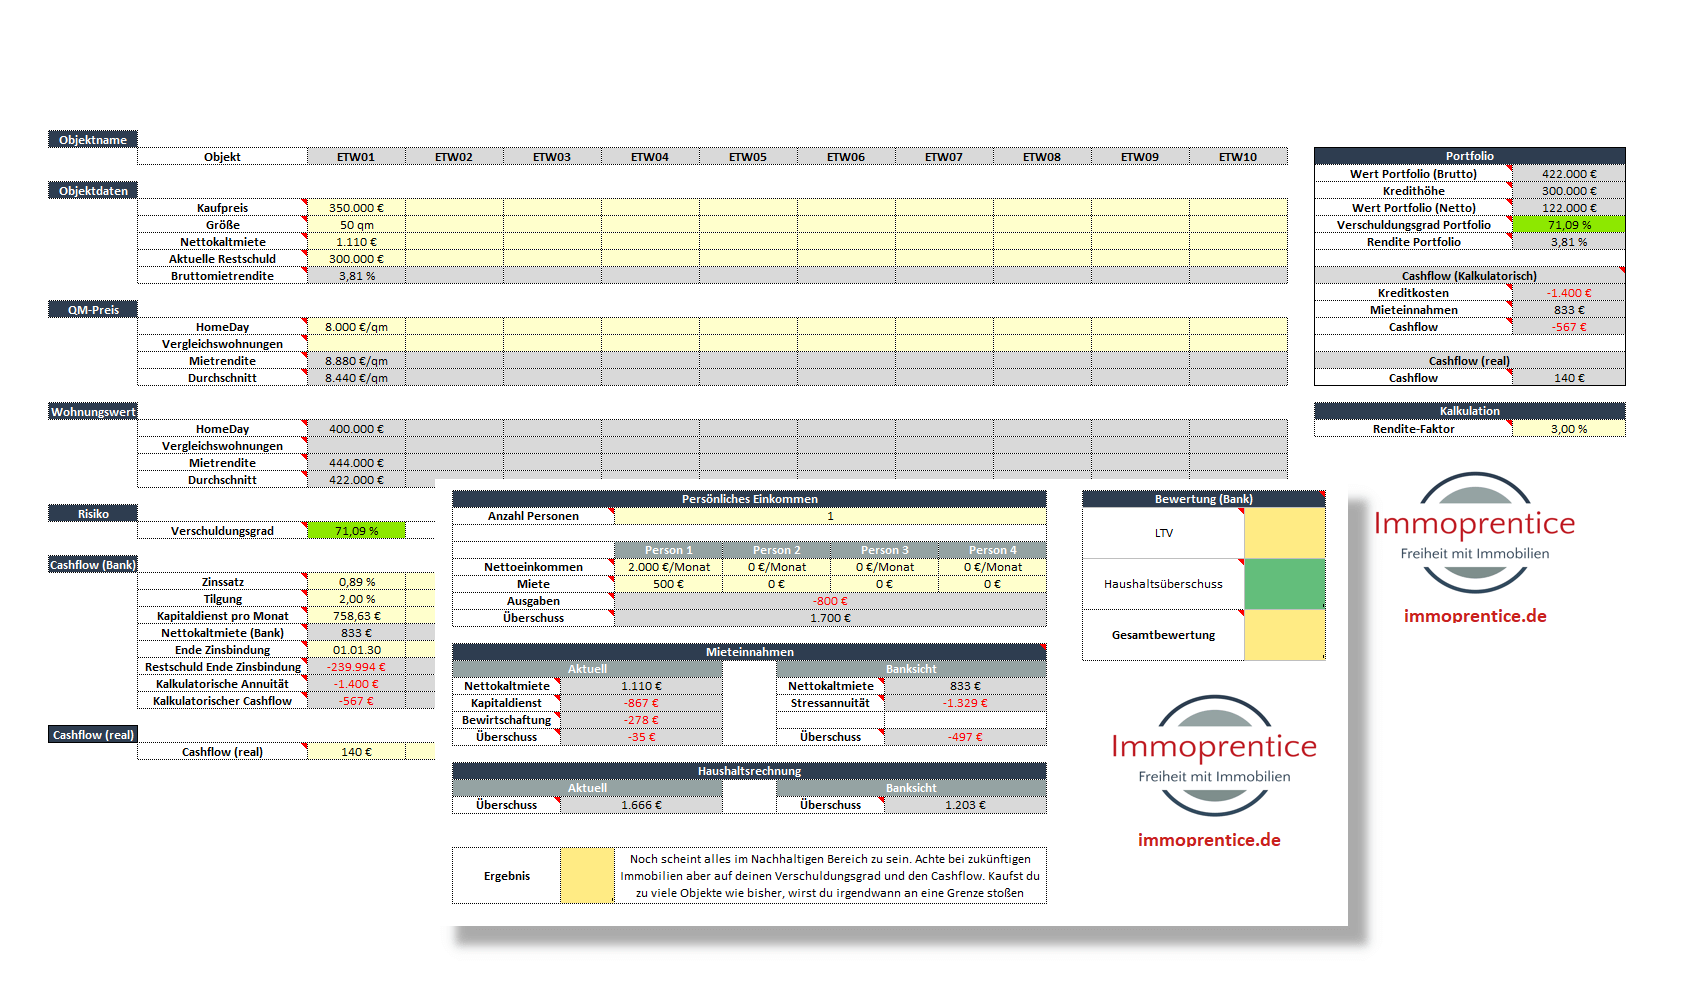 Bild des Immoprentice Portfoliotools, ein Tool zur einfachen Verwaltung eines Immobilienportfolio in Excel.